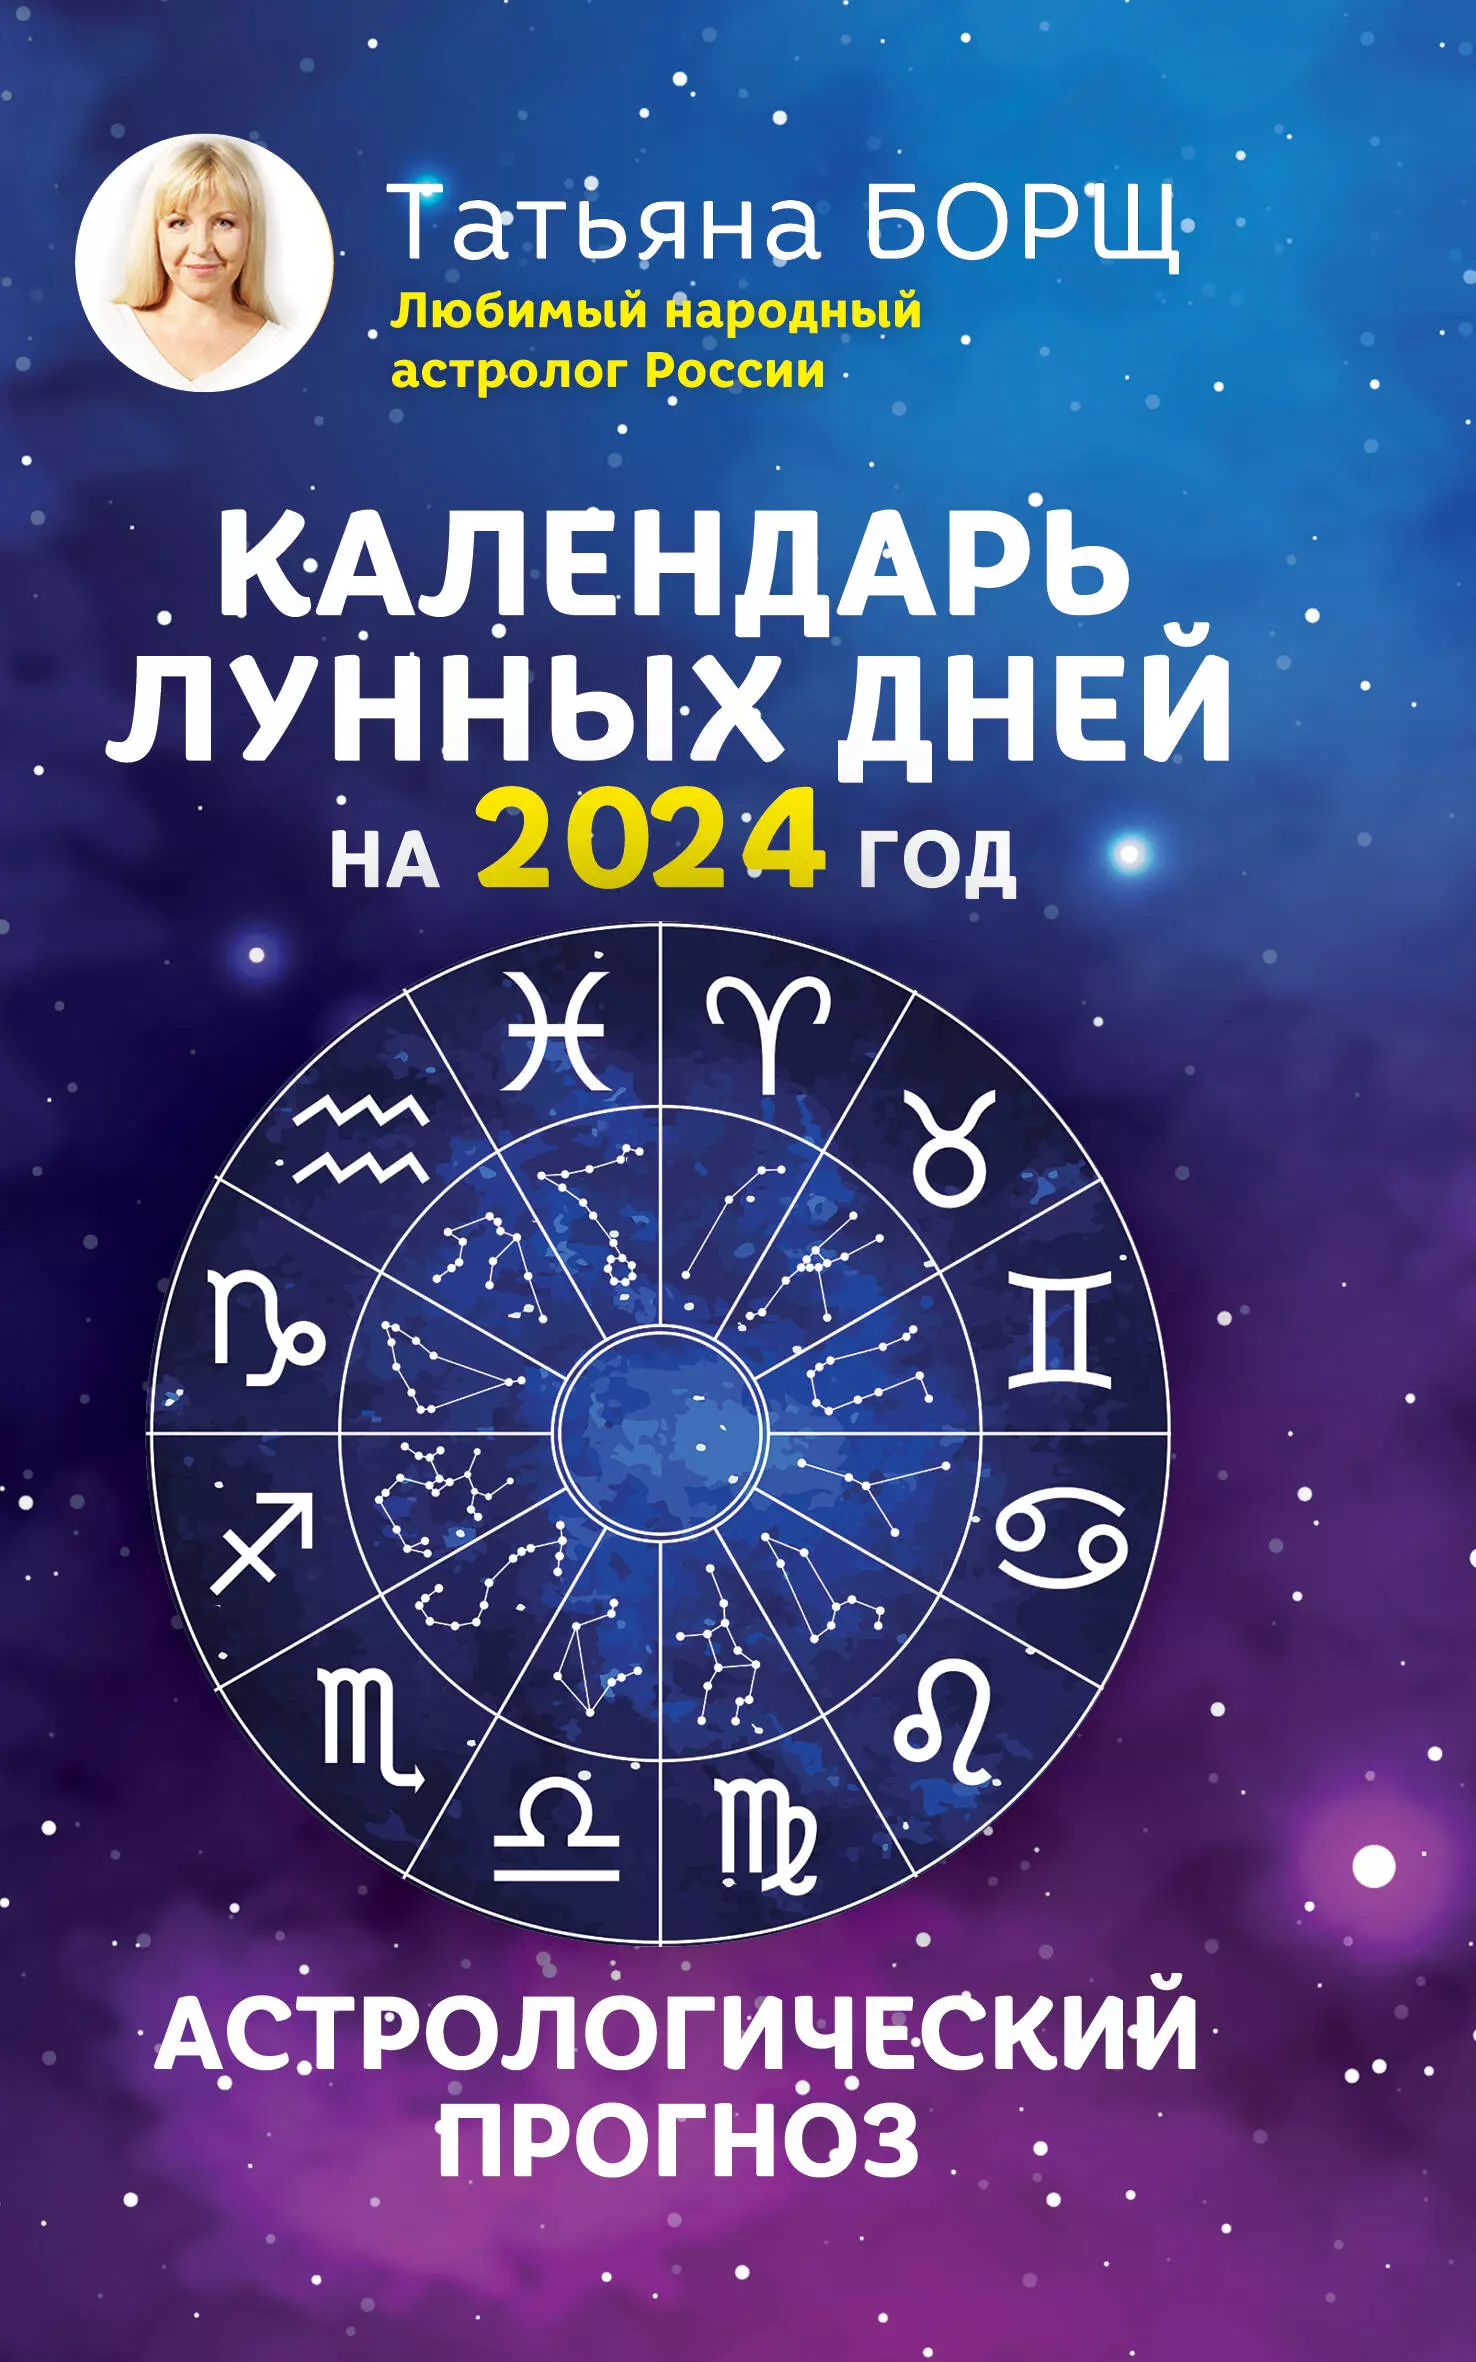 Борщ Татьяна Юрьевна - Календарь лунных дней на 2024 год: астрологический прогноз